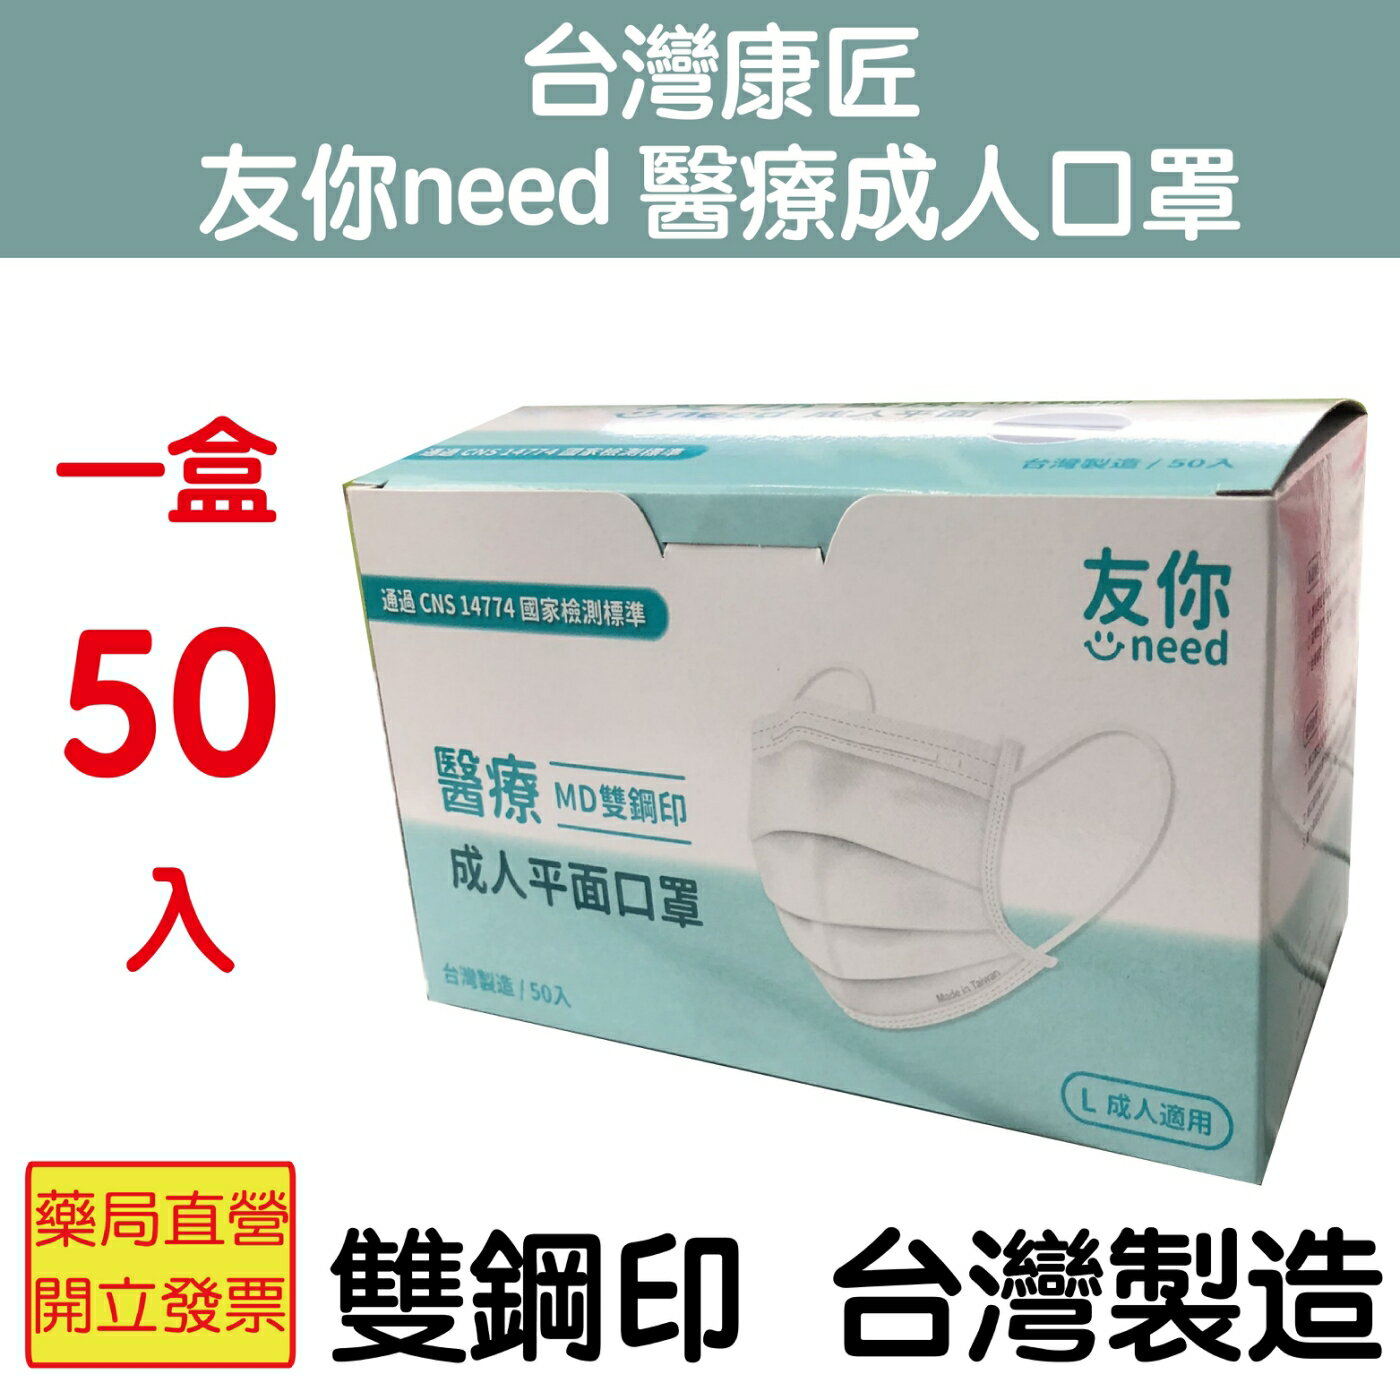 台灣康匠 友你need 醫療成人口罩 雙鋼印 台灣製造 雙色選擇 通過CNS14774國家檢測標準